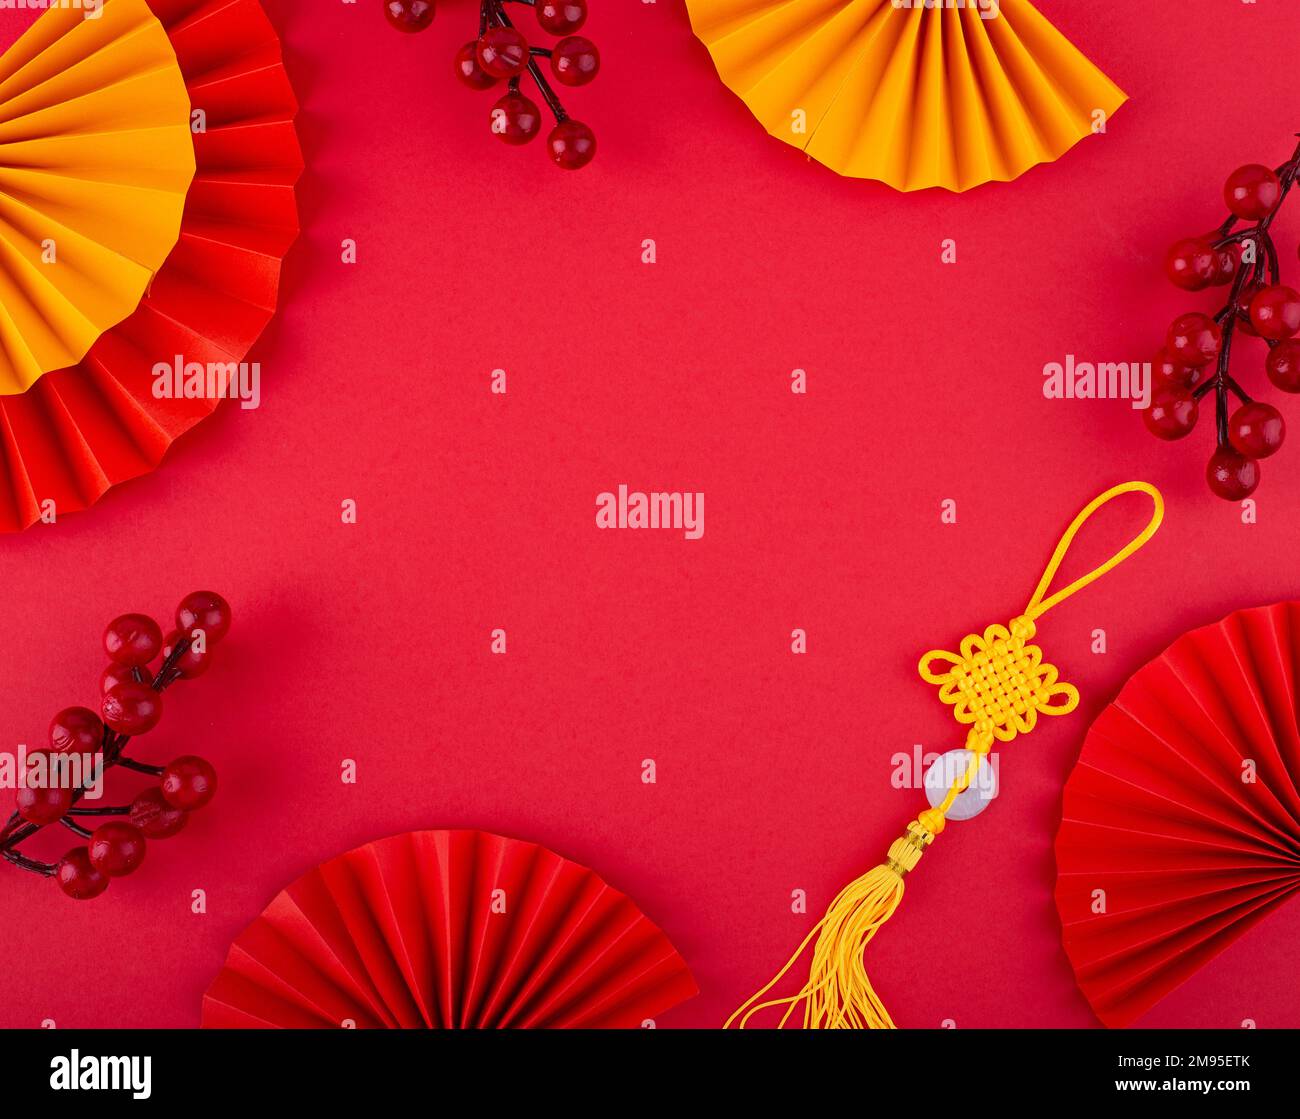 Với banner Tết Trung Quốc tuyệt đẹp này, bạn sẽ cảm thấy như đang ở Trung Quốc đây! Màu đỏ chủ đạo và những họa tiết truyền thống mang lại không khí Tết rực rỡ. Hãy bấm ngay vào hình ảnh để chiêm ngưỡng sự đẹp lung linh của banner Tết này nhé!